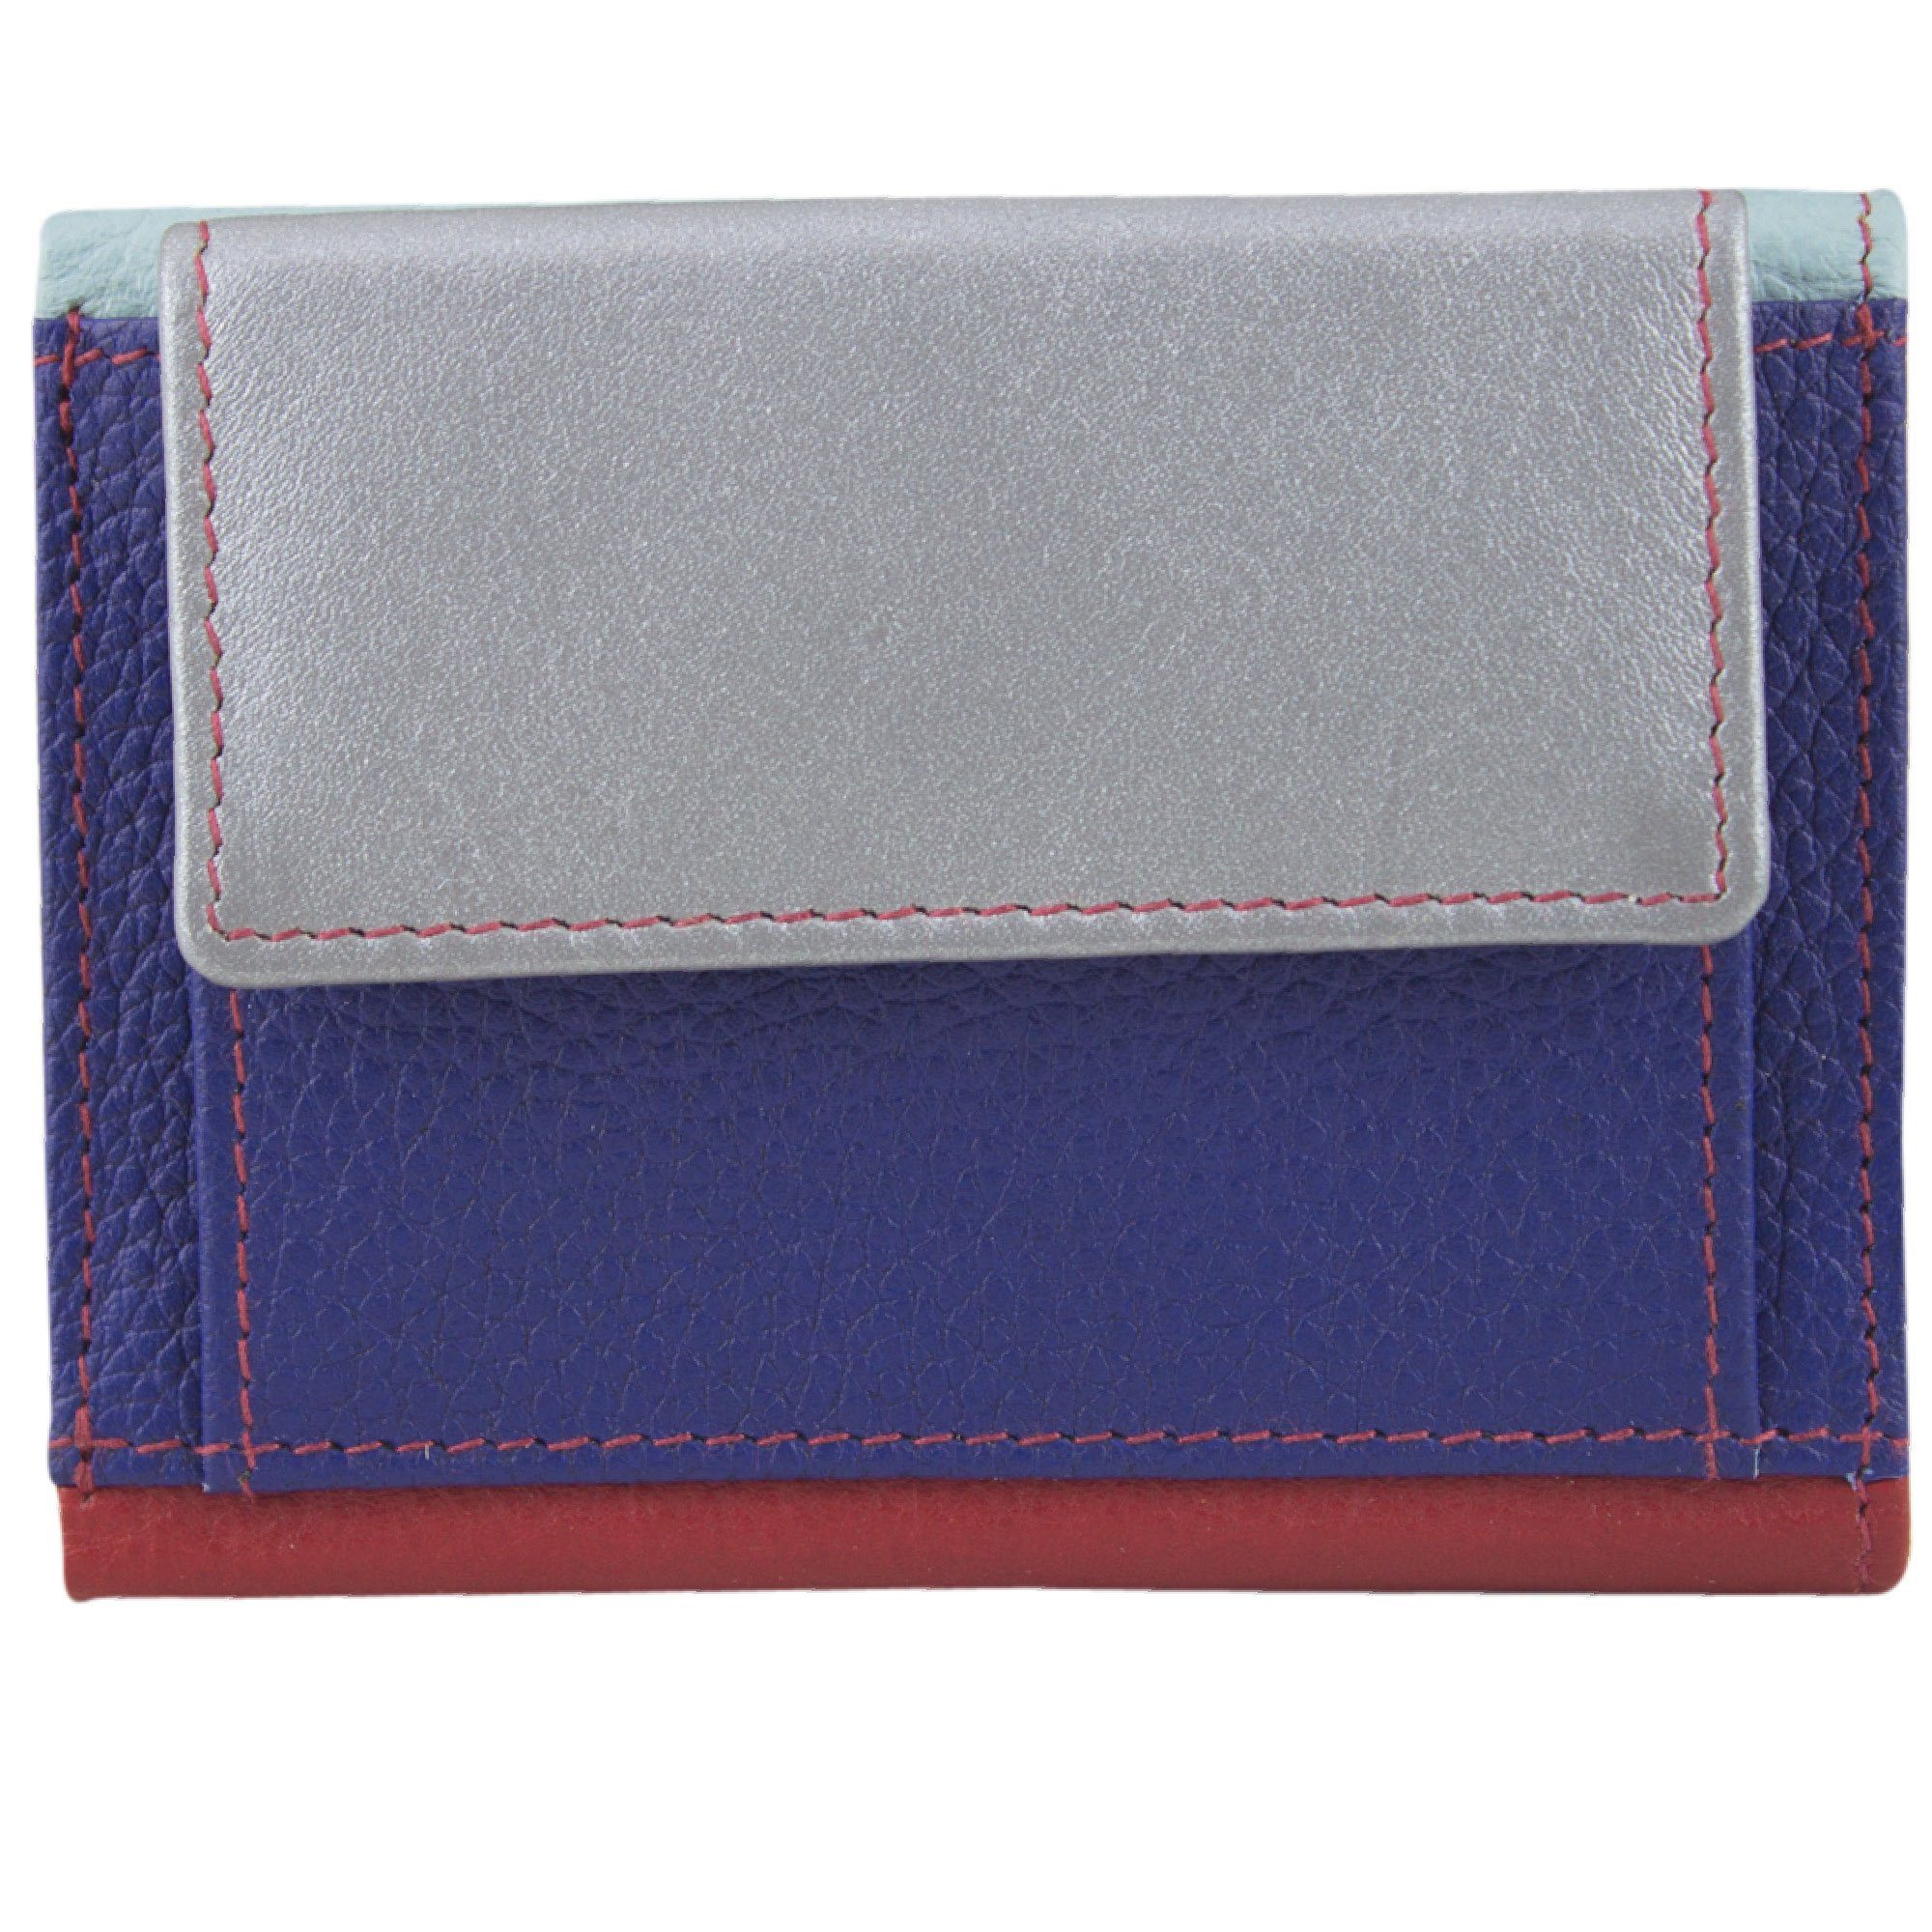 Sunsa Mini Geldbörse Mini klein Leder Geldbörse Geldbeutel Portemonnaie Brieftasche, echt Leder, aus recycelten Lederresten, mit RFID-Schutz, Unisex blau/silber/rot